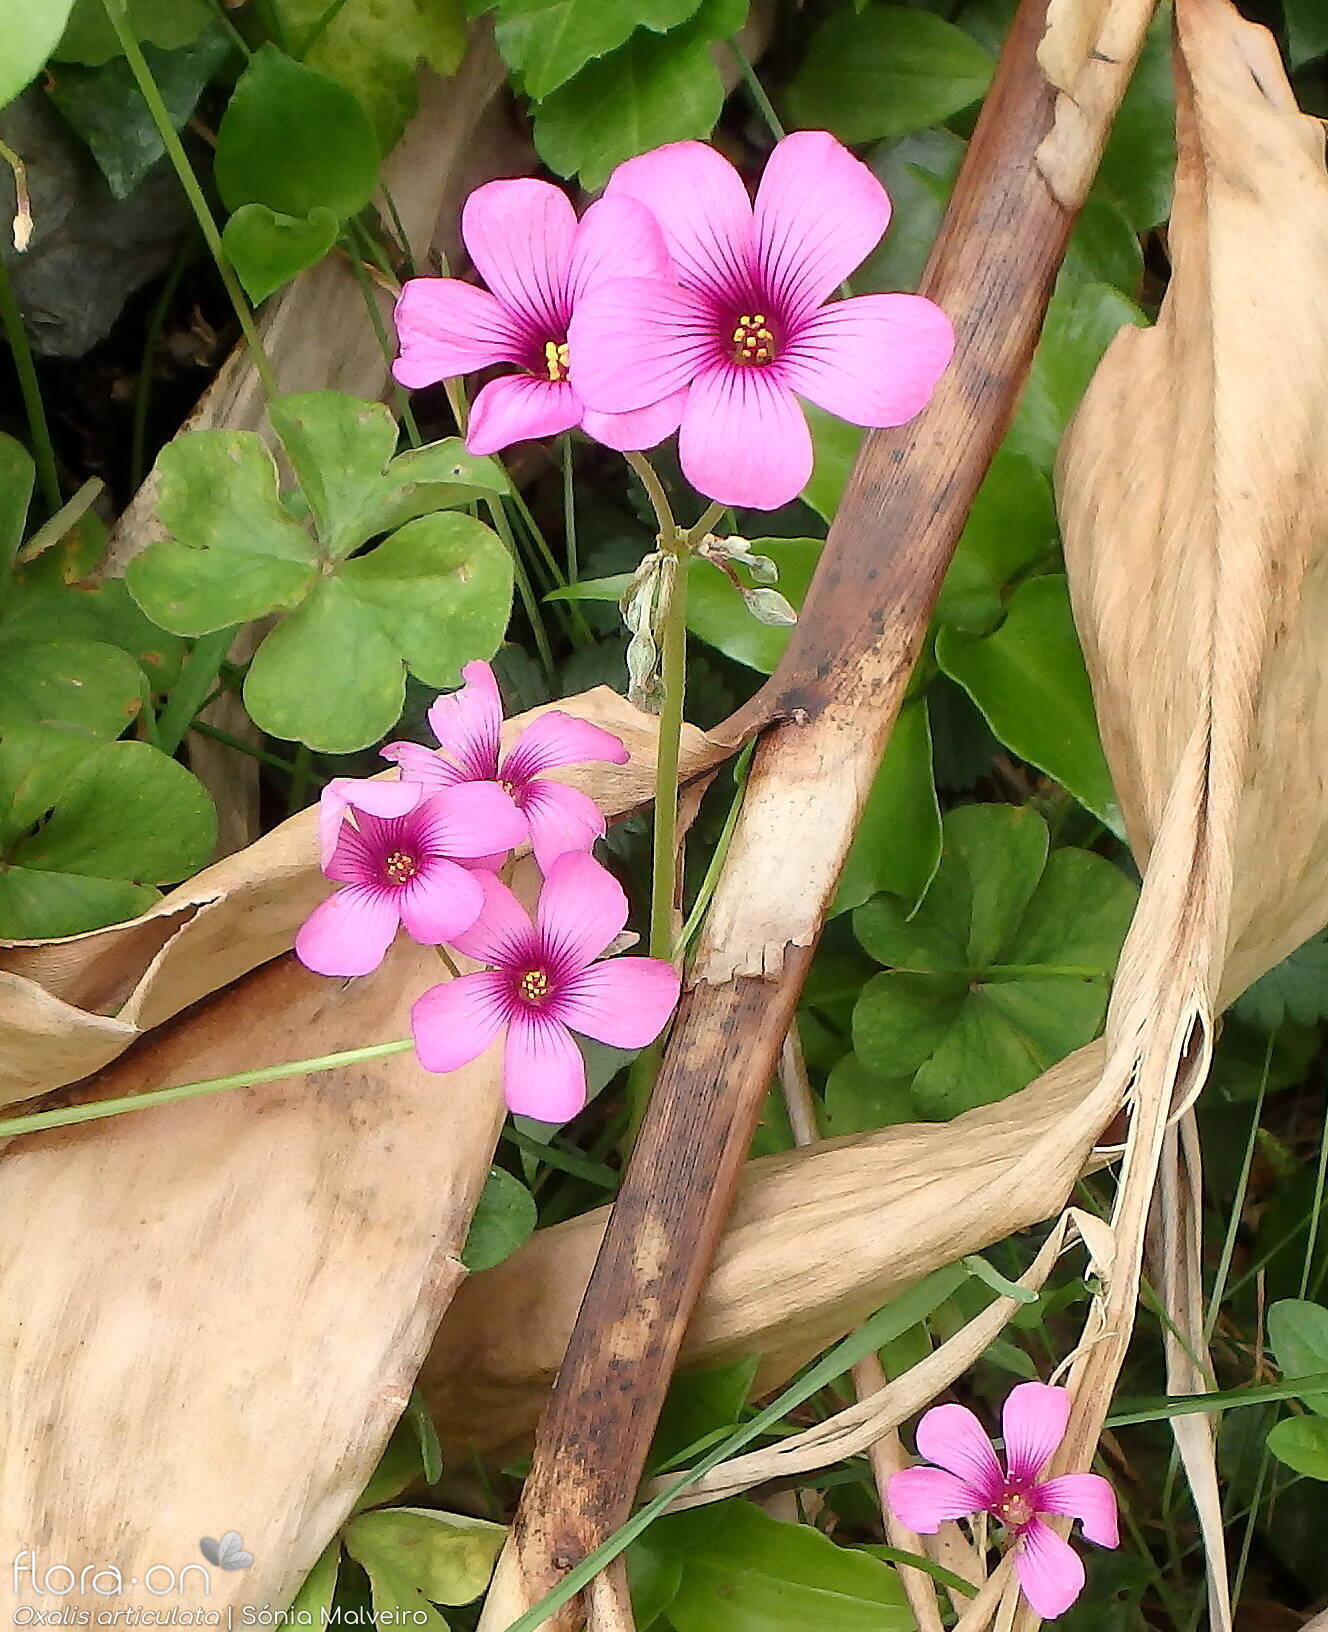 Oxalis articulata - Flor (geral) | Sónia Malveiro; CC BY-NC 4.0